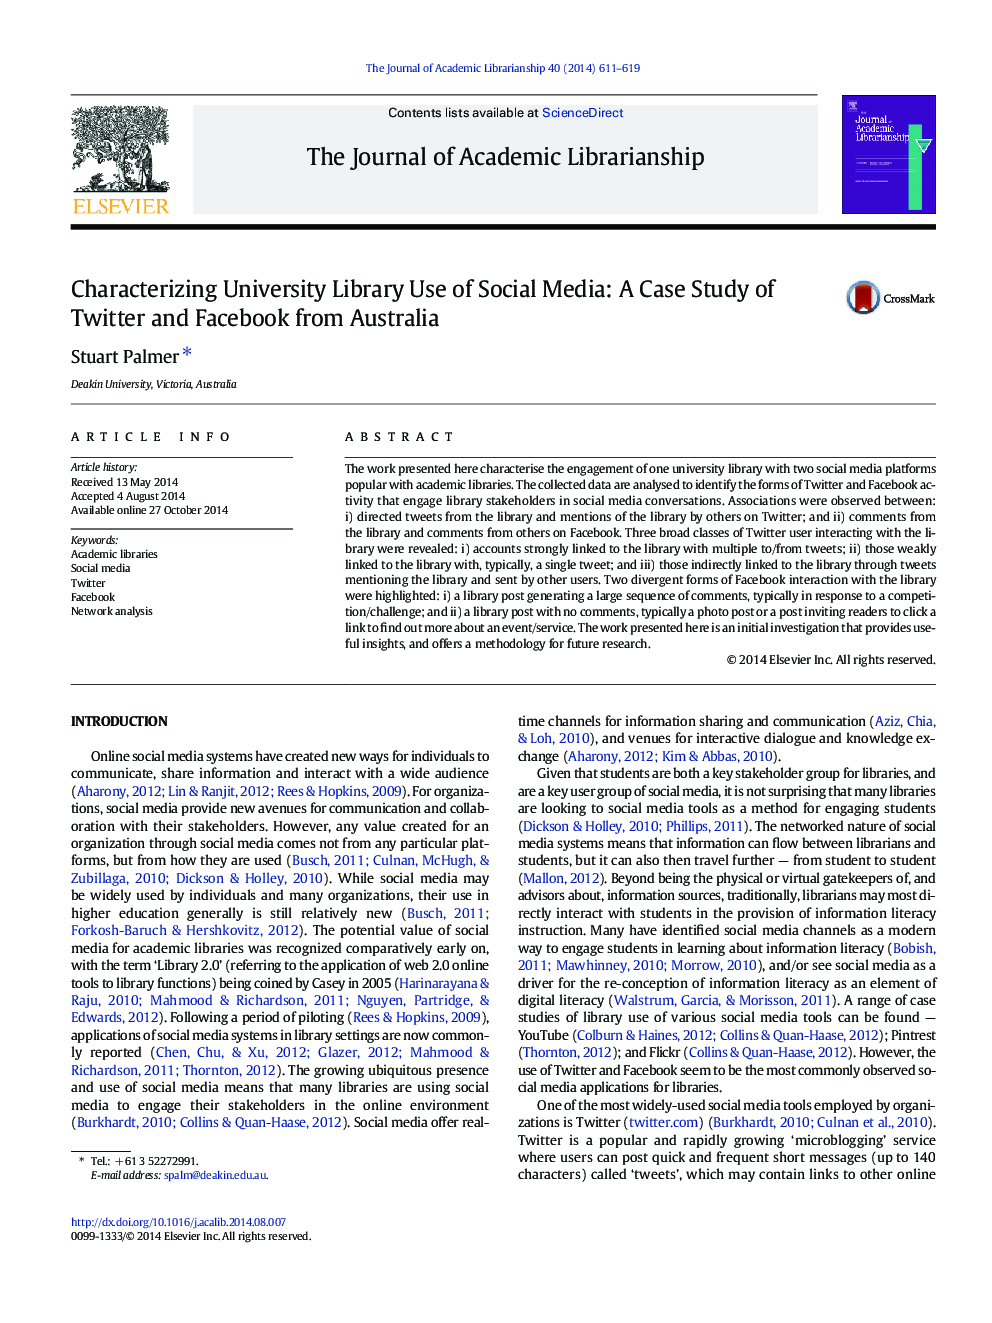 توصیف کتابخانه دانشگاه از استفاده از رسانه های اجتماعی: مطالعه موردی توییتر و فیس بوک از استرالیا